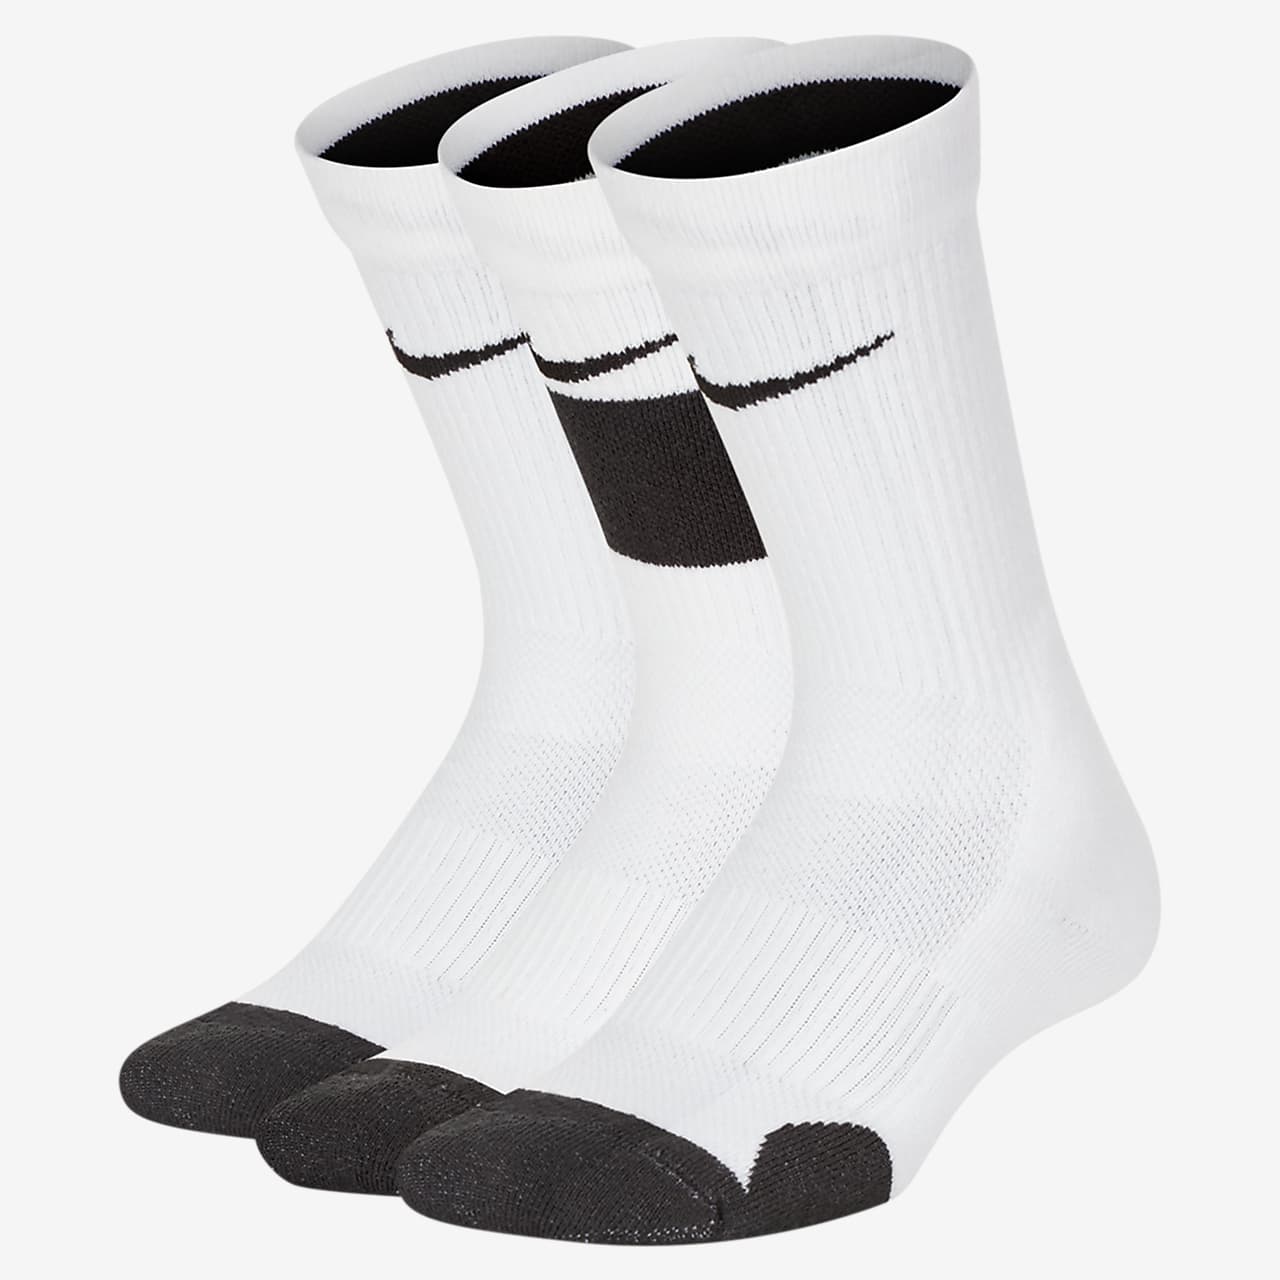 nike elite socks on feet